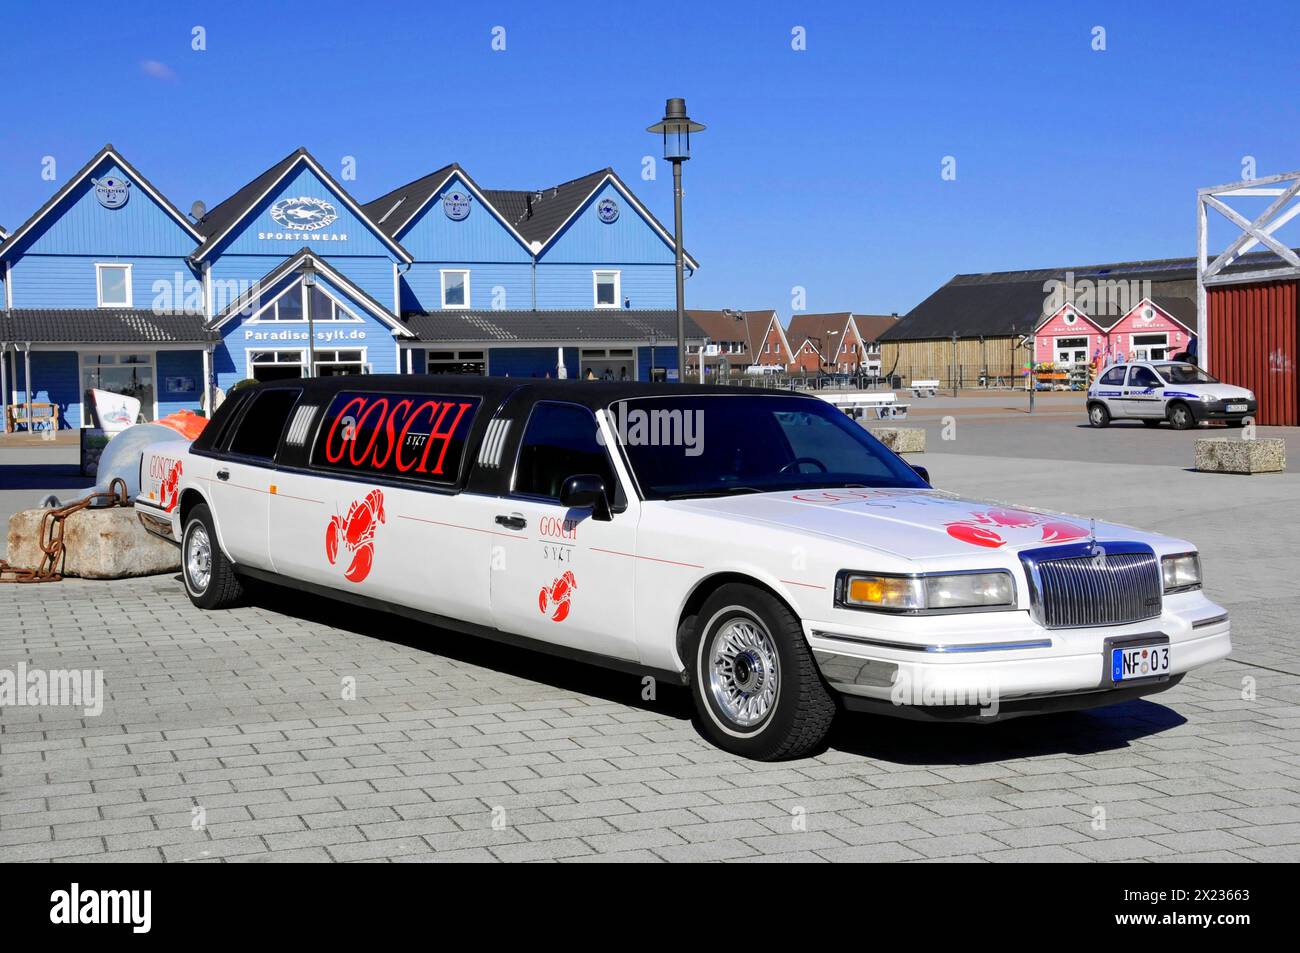 Lista, porto, Sylt, isola della Frisia settentrionale, Una limousine bianca con accattivanti adesivi rossi GOSCH è parcheggiata in un parcheggio, Sylt Foto Stock